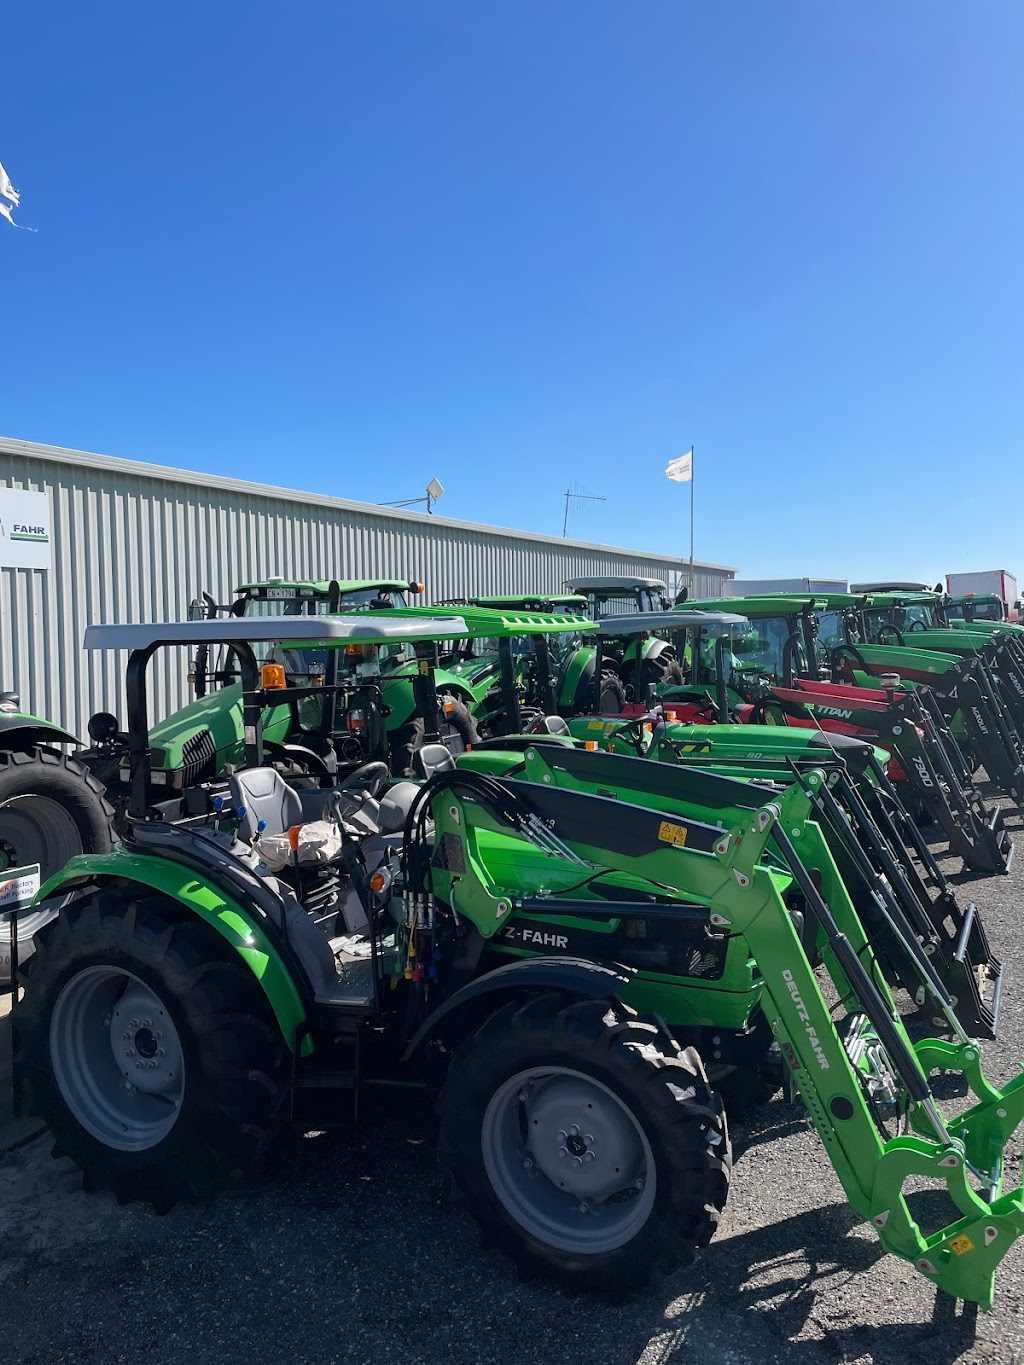 SLR Tractors and Machinery | 805 Eighty Rd, Baldivis WA 6171, Australia | Phone: 0429 622 124